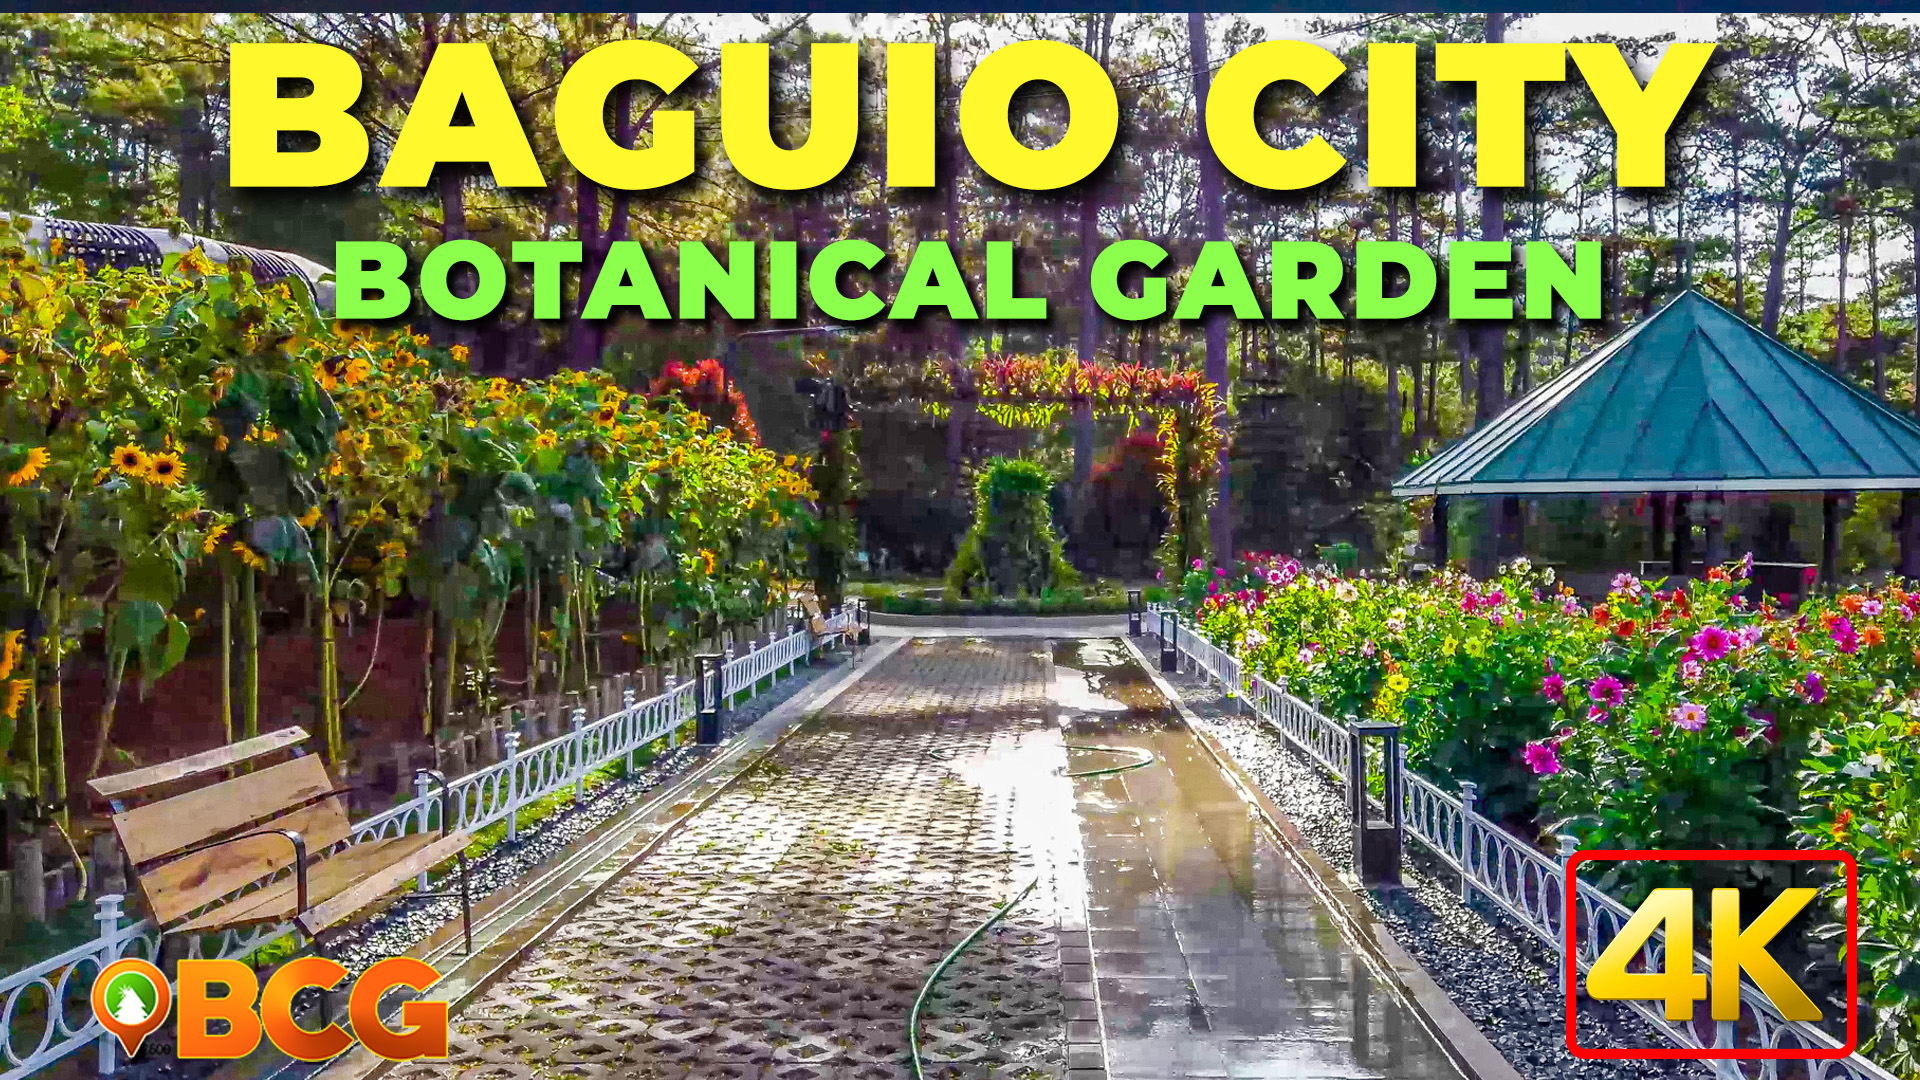 baguio tourist spots entrance fee